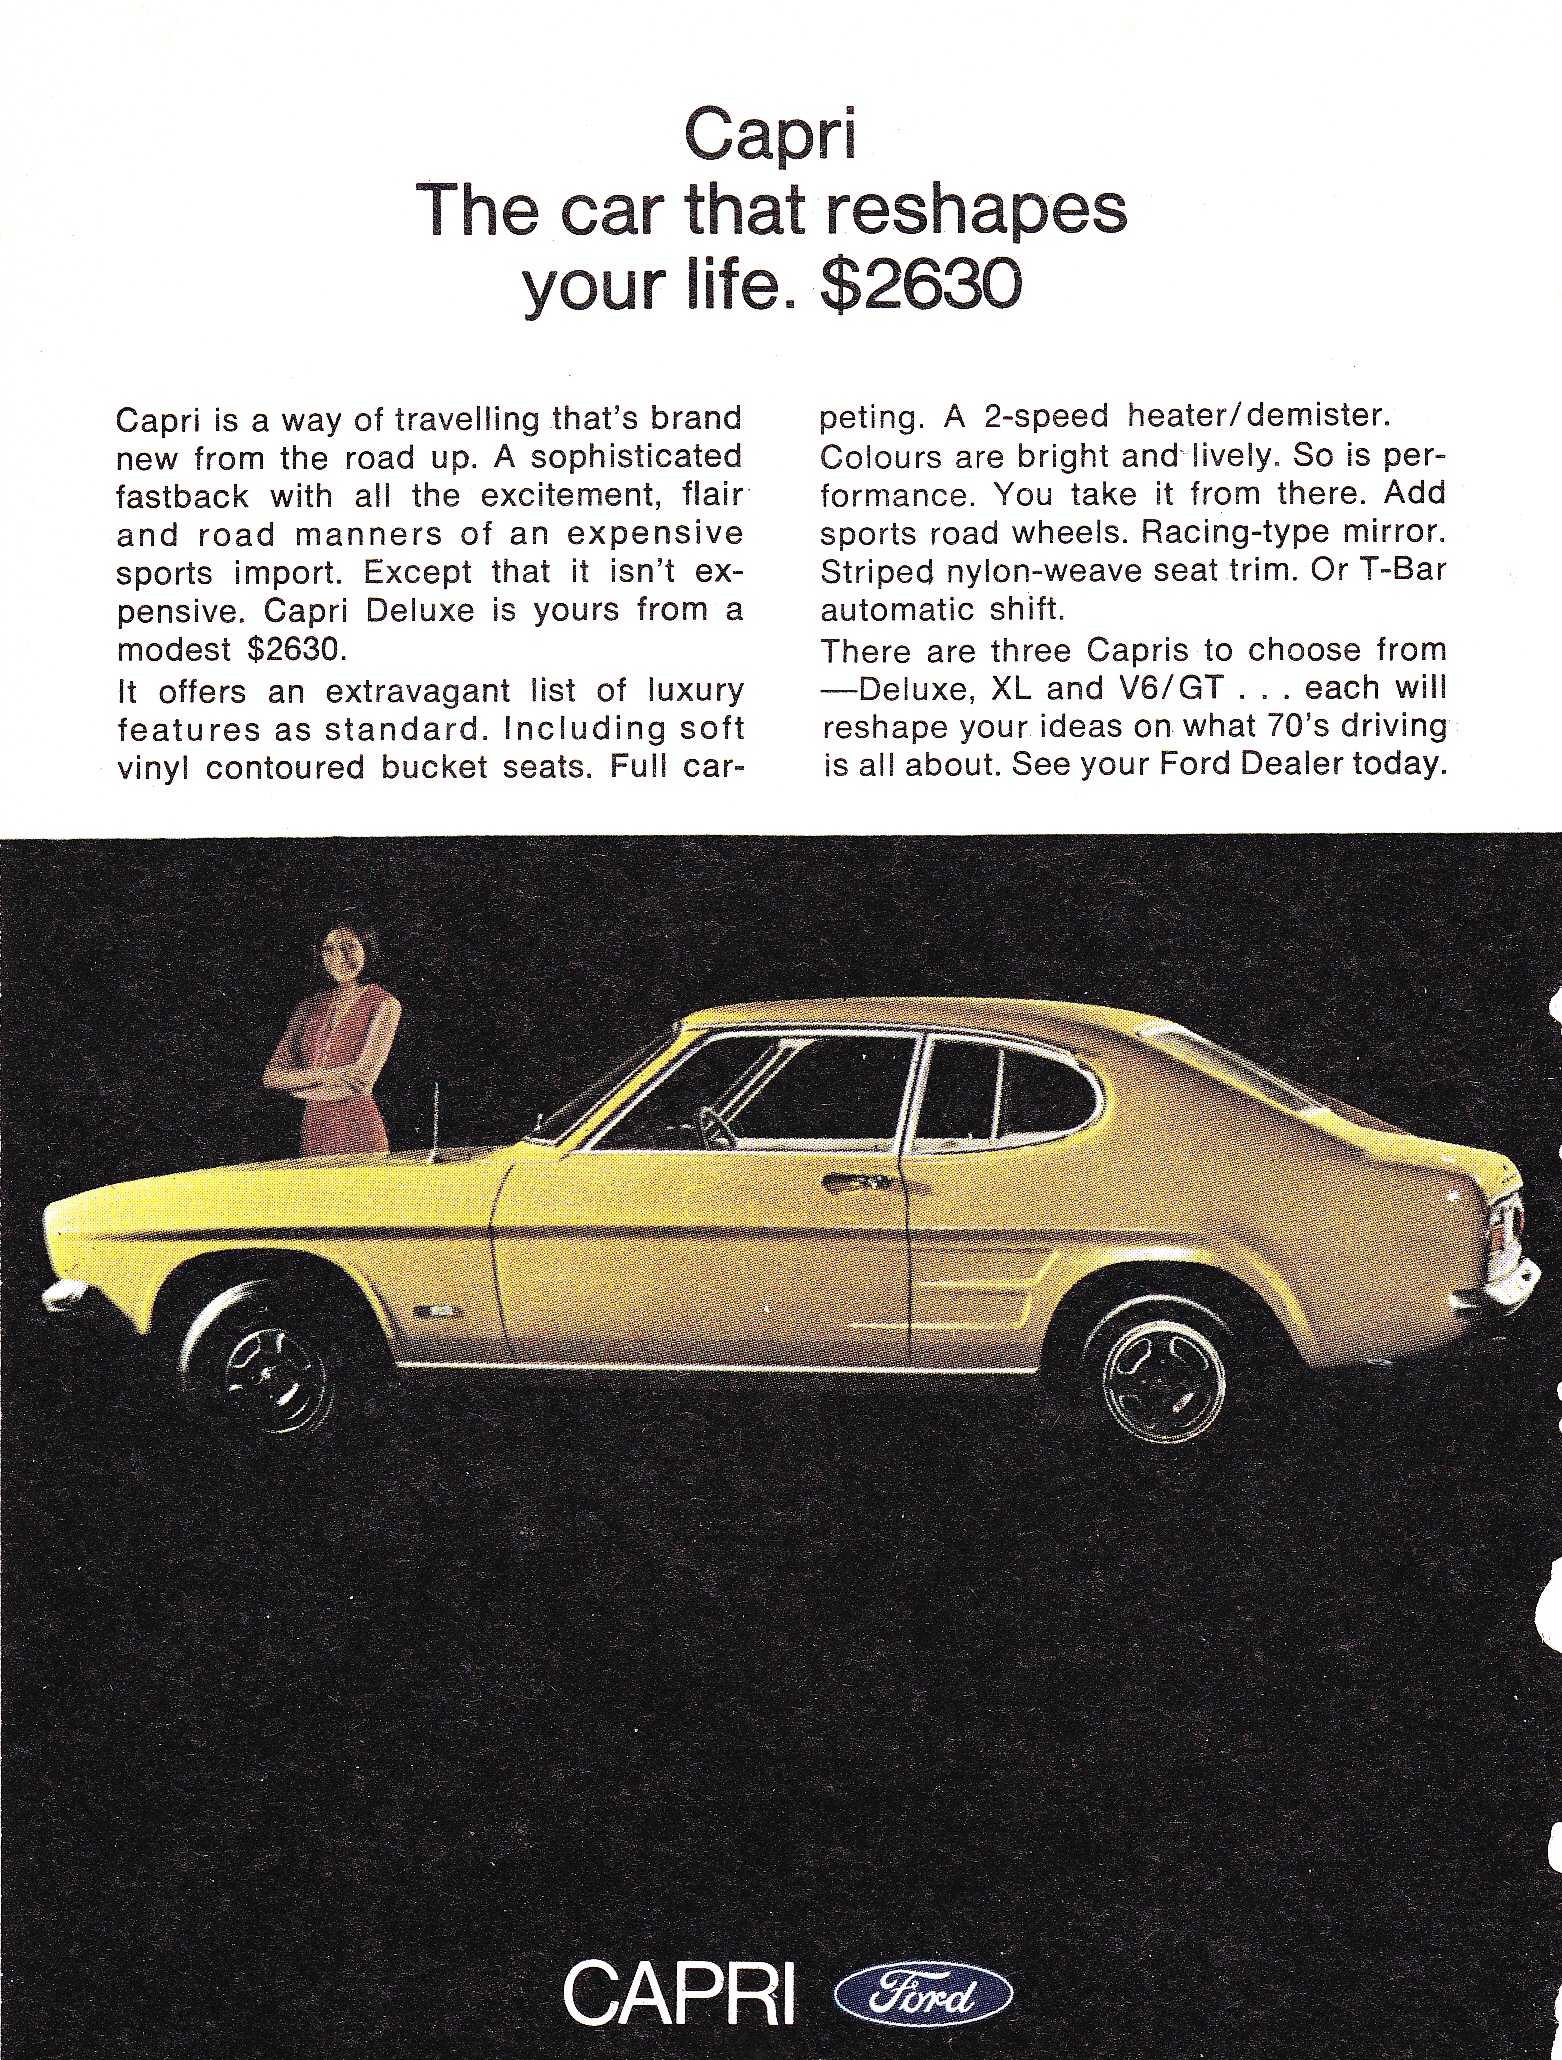 1970 Ford XL Capri Deluxe V6:GT